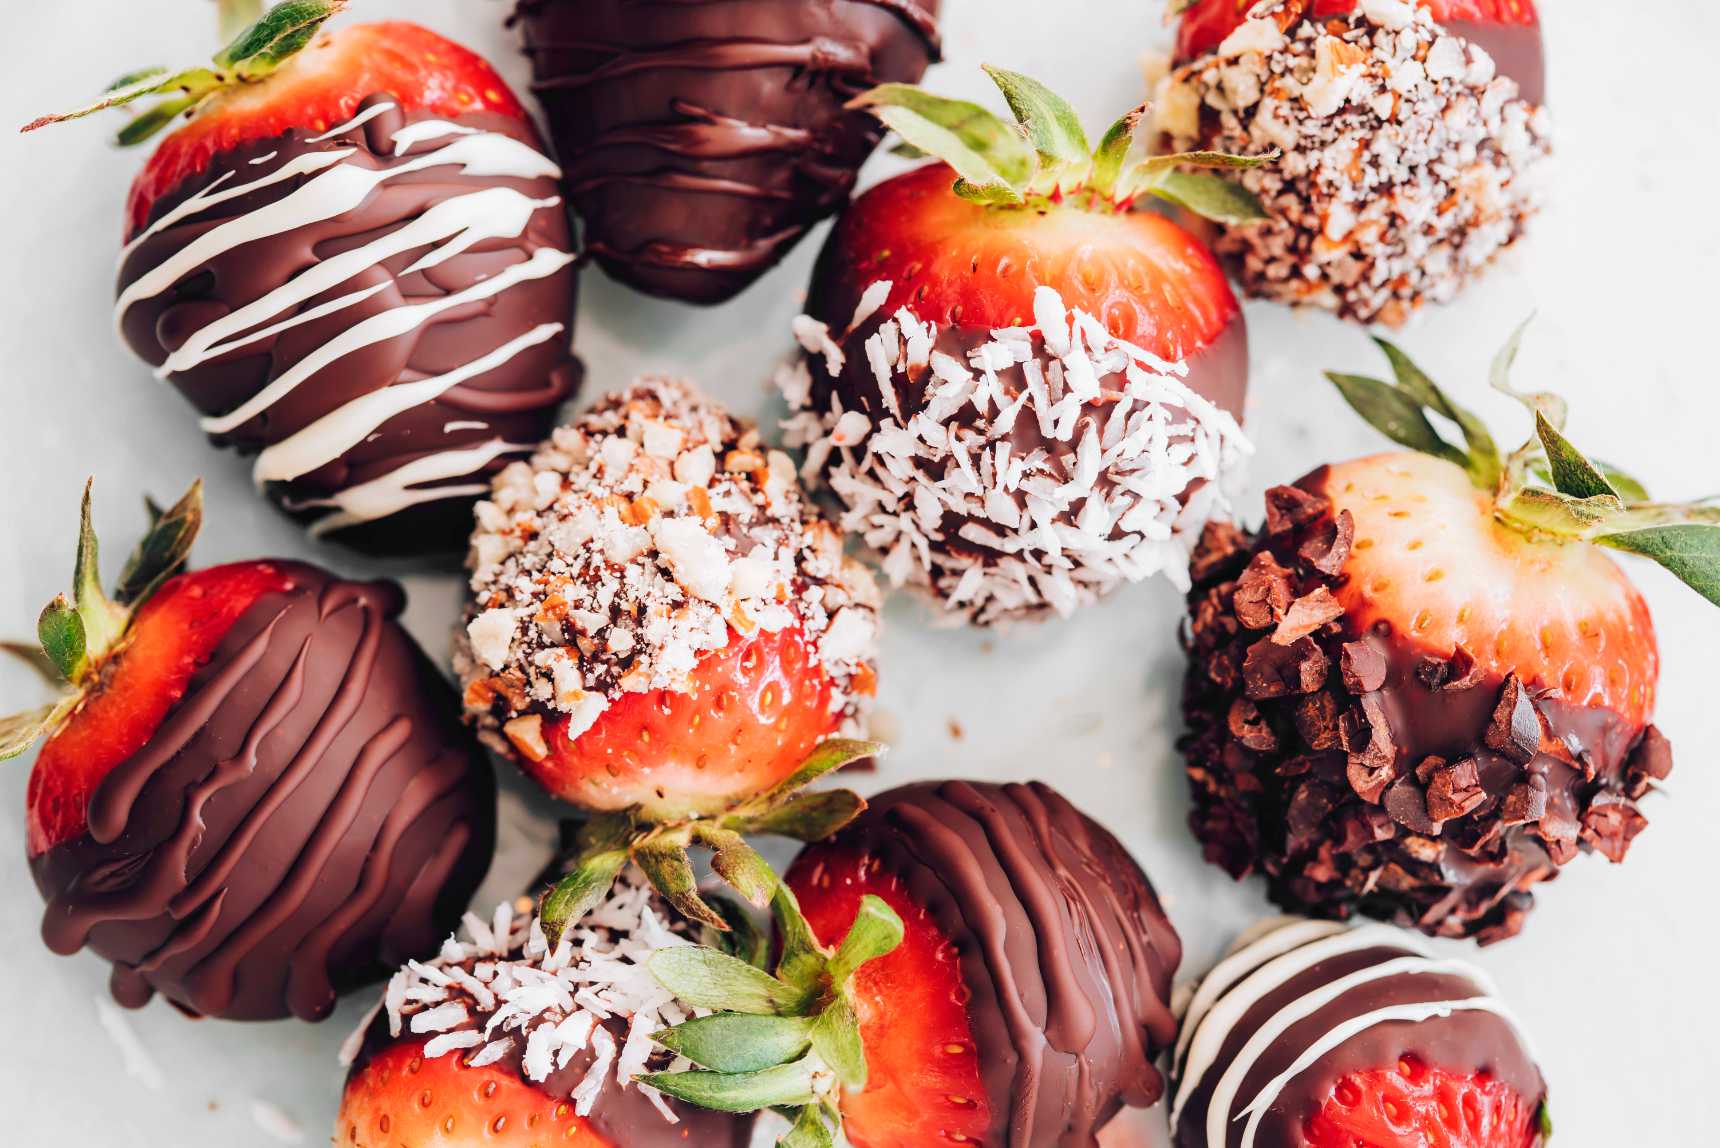 Vegan Chocolate-Covered Strawberries